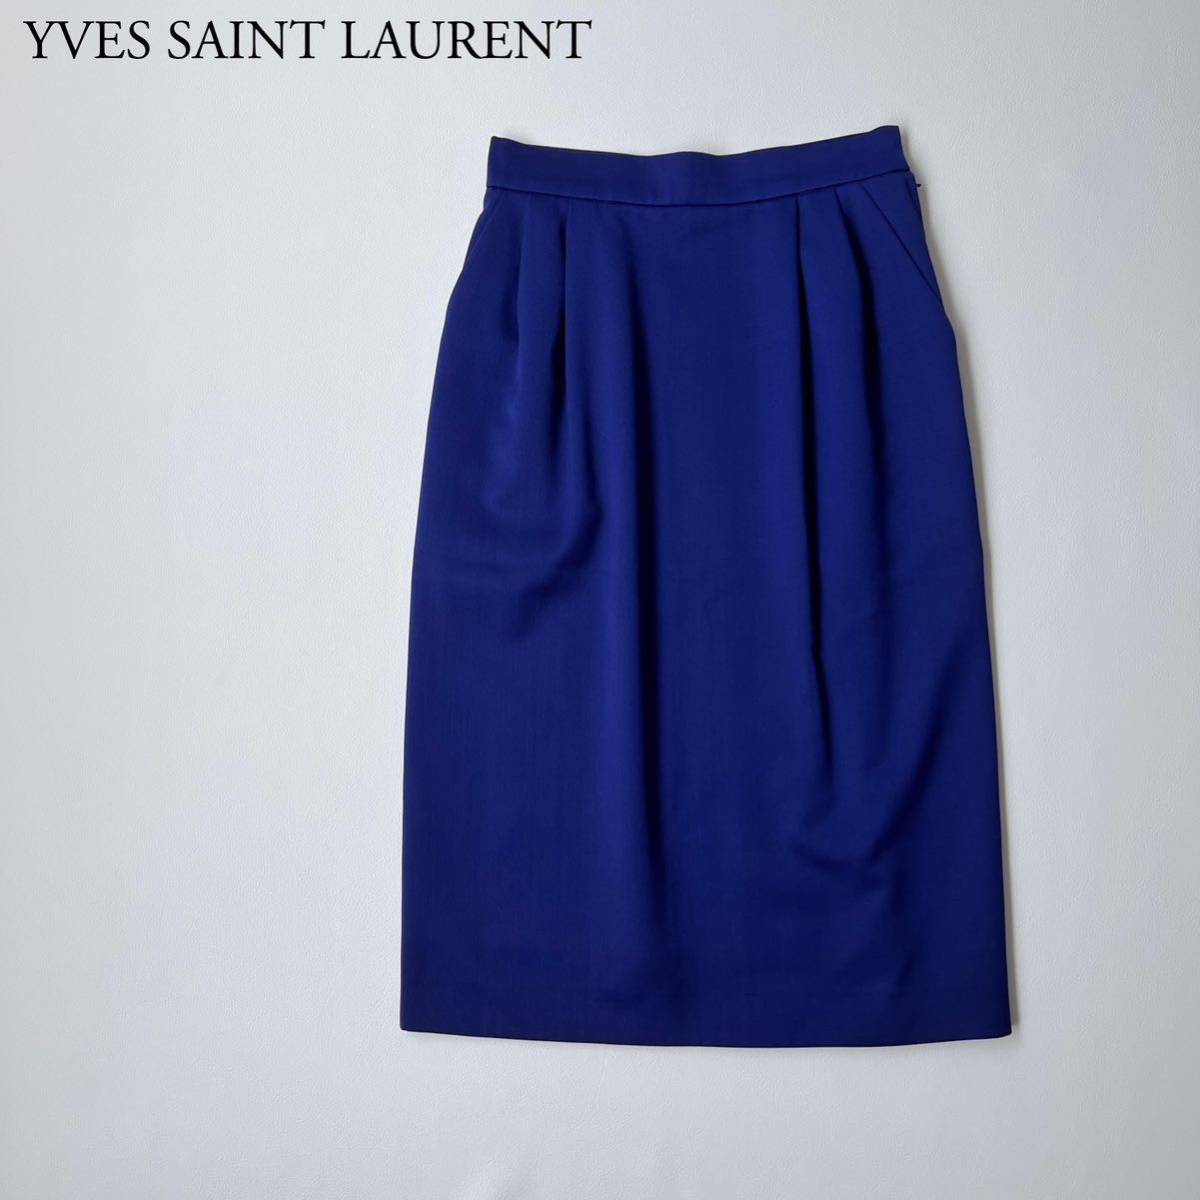 話題の行列 Yves Saint Laurent イヴサンローラン ロングスカート